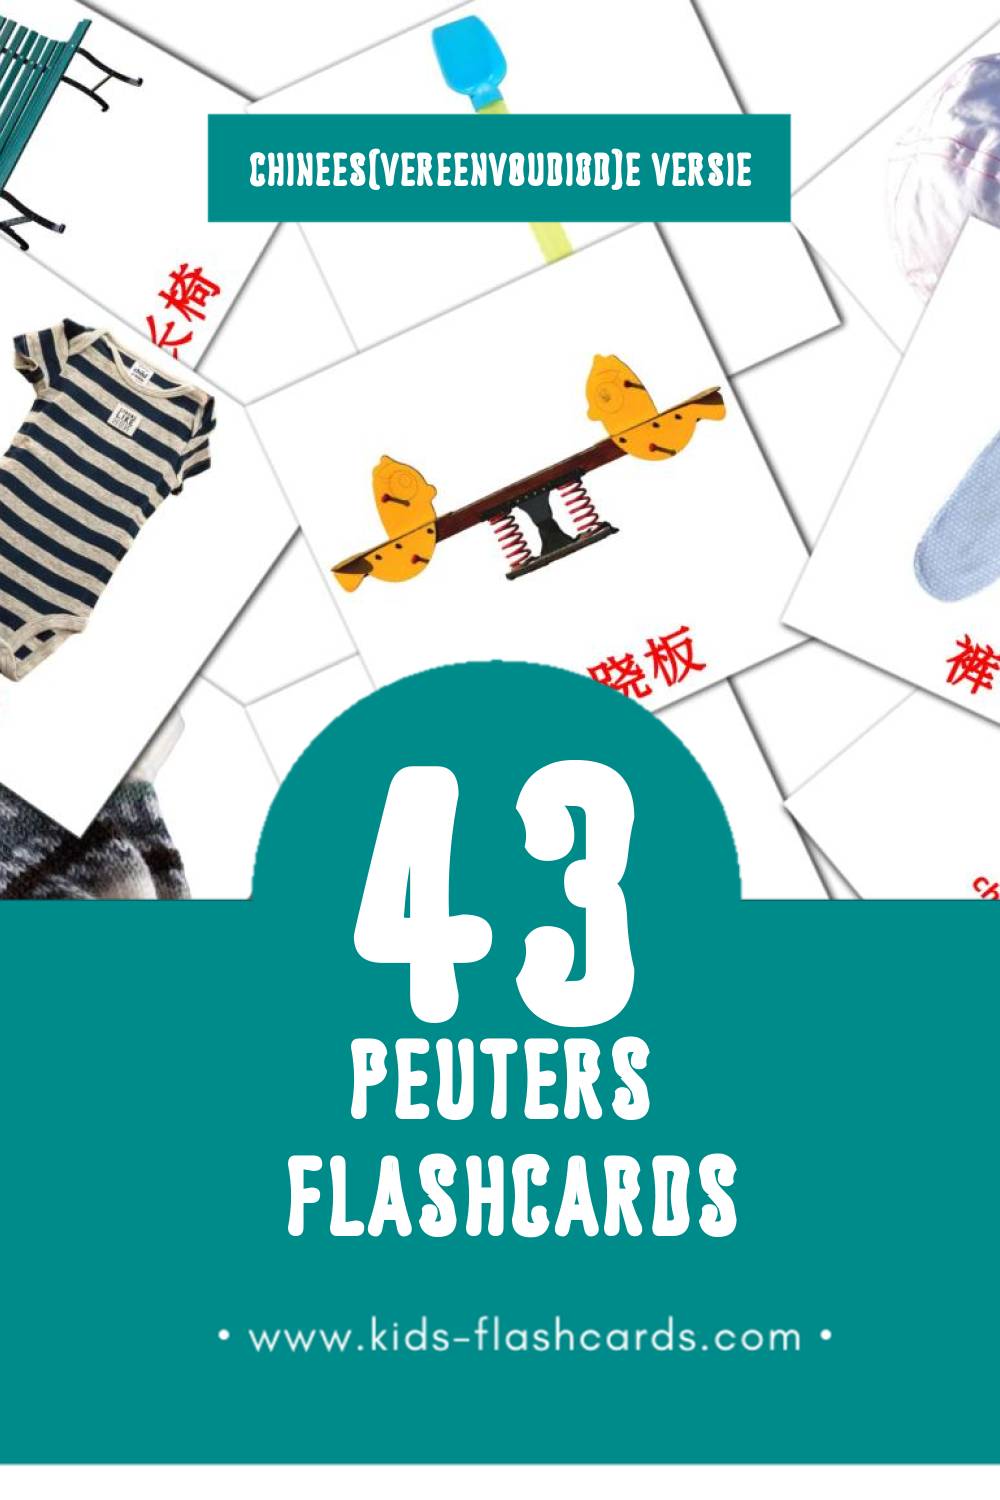 Visuele 宝宝 Flashcards voor Kleuters (43 kaarten in het Chinees(vereenvoudigd))